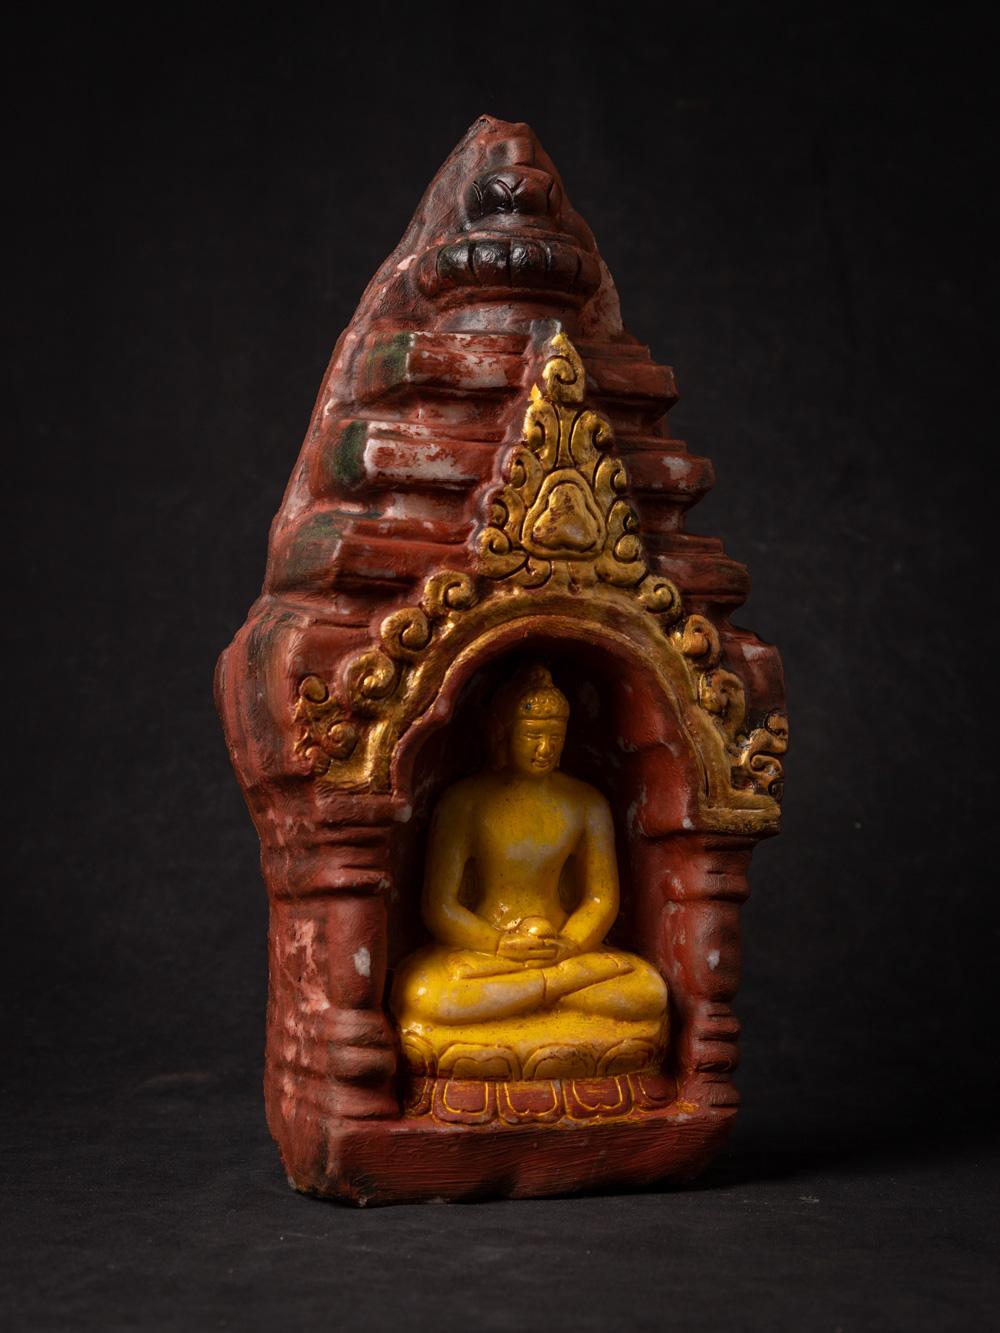 Marmor-Buddha-Statue aus Thailand
MATERIAL : Marmor
35,8 cm hoch
18 cm breit und 7,5 cm tief
Dhyana Mudra
Ende des 20. Jahrhunderts
Gewicht: 6,97 kg
Mit Ursprung in Thailand
Nr: 3760-6
